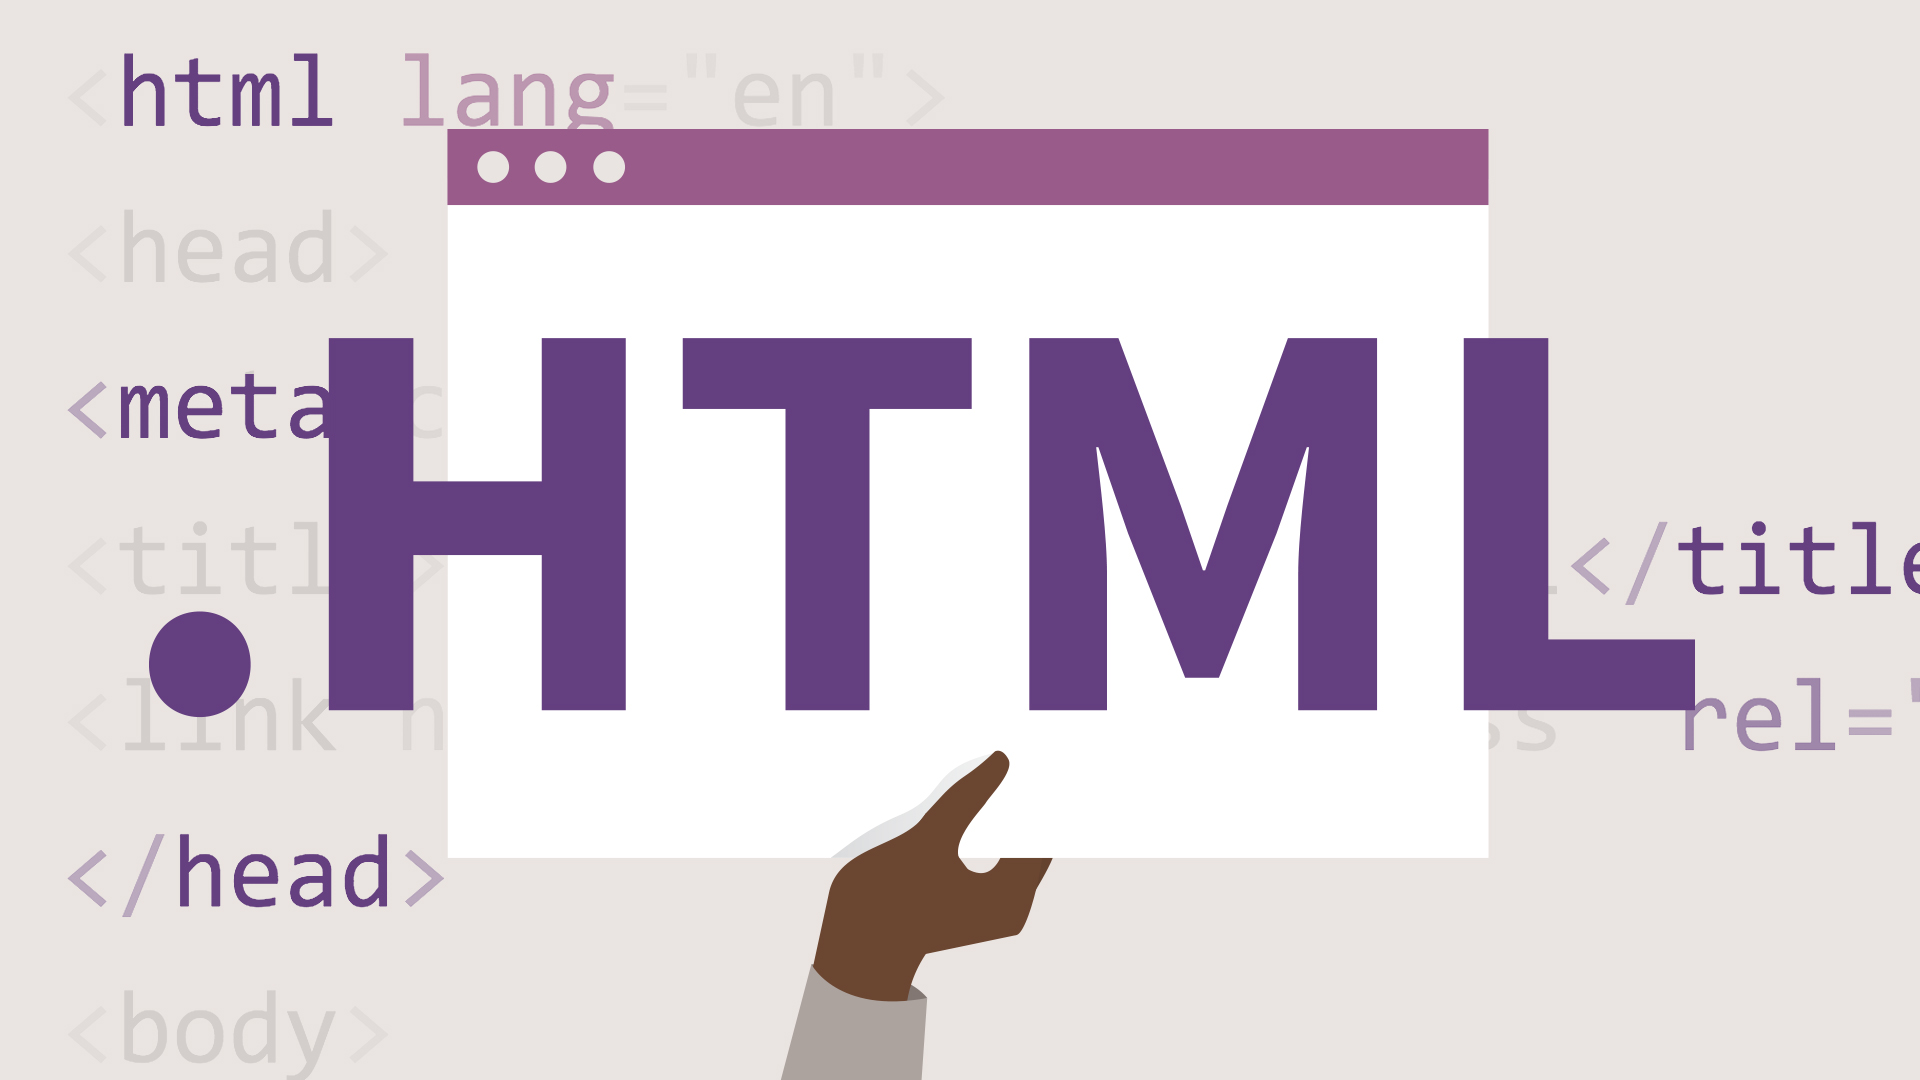 I Tag HTML che non tutti i programmatori conoscono